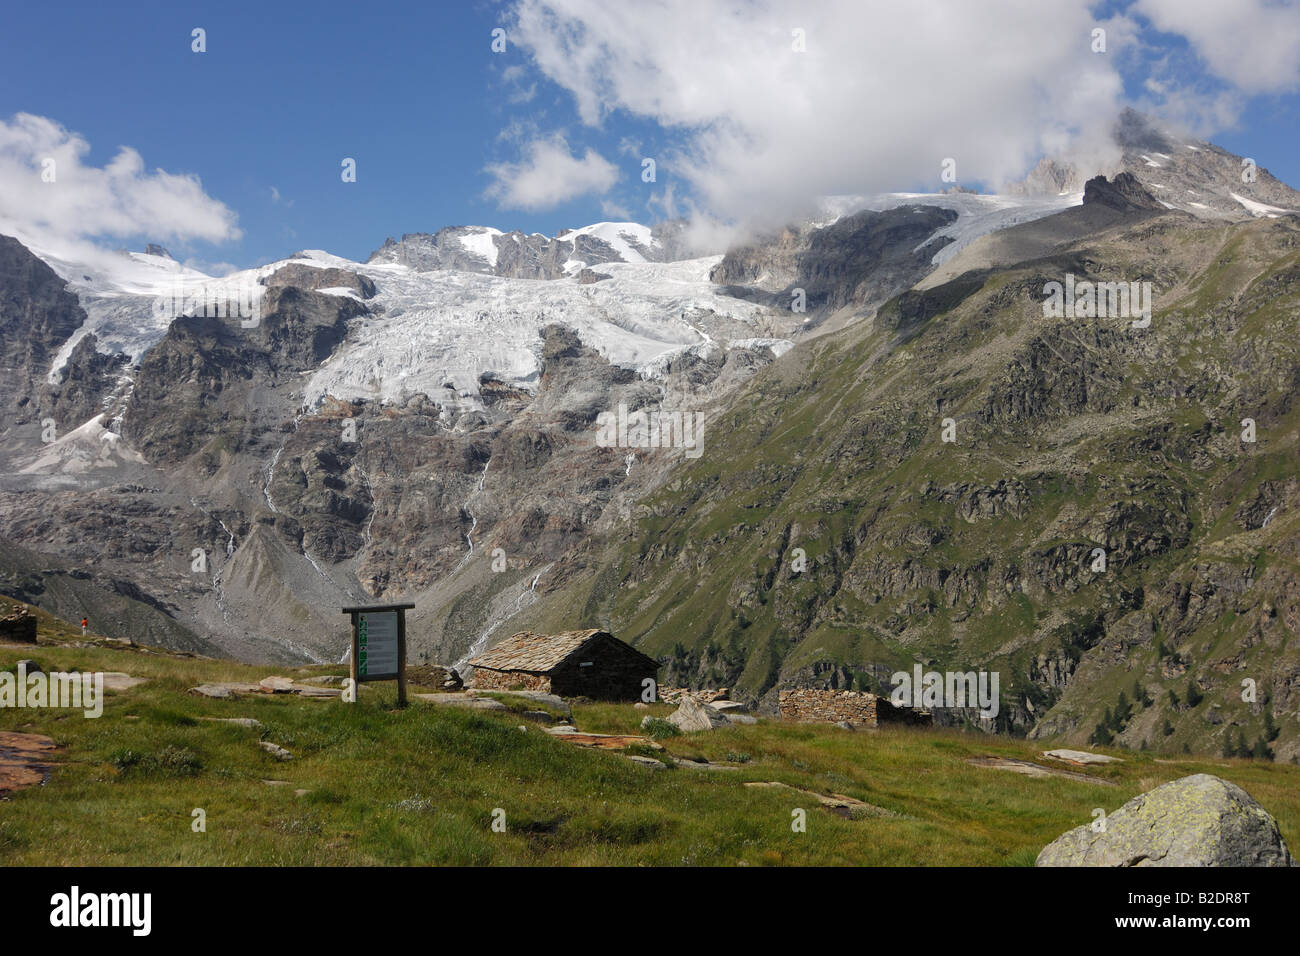 mountain landscape glacier tribolazione prateria alpina dal Money montagna casolari  Cogne Parco Nazionale Gran Paradiso Valnont Stock Photo